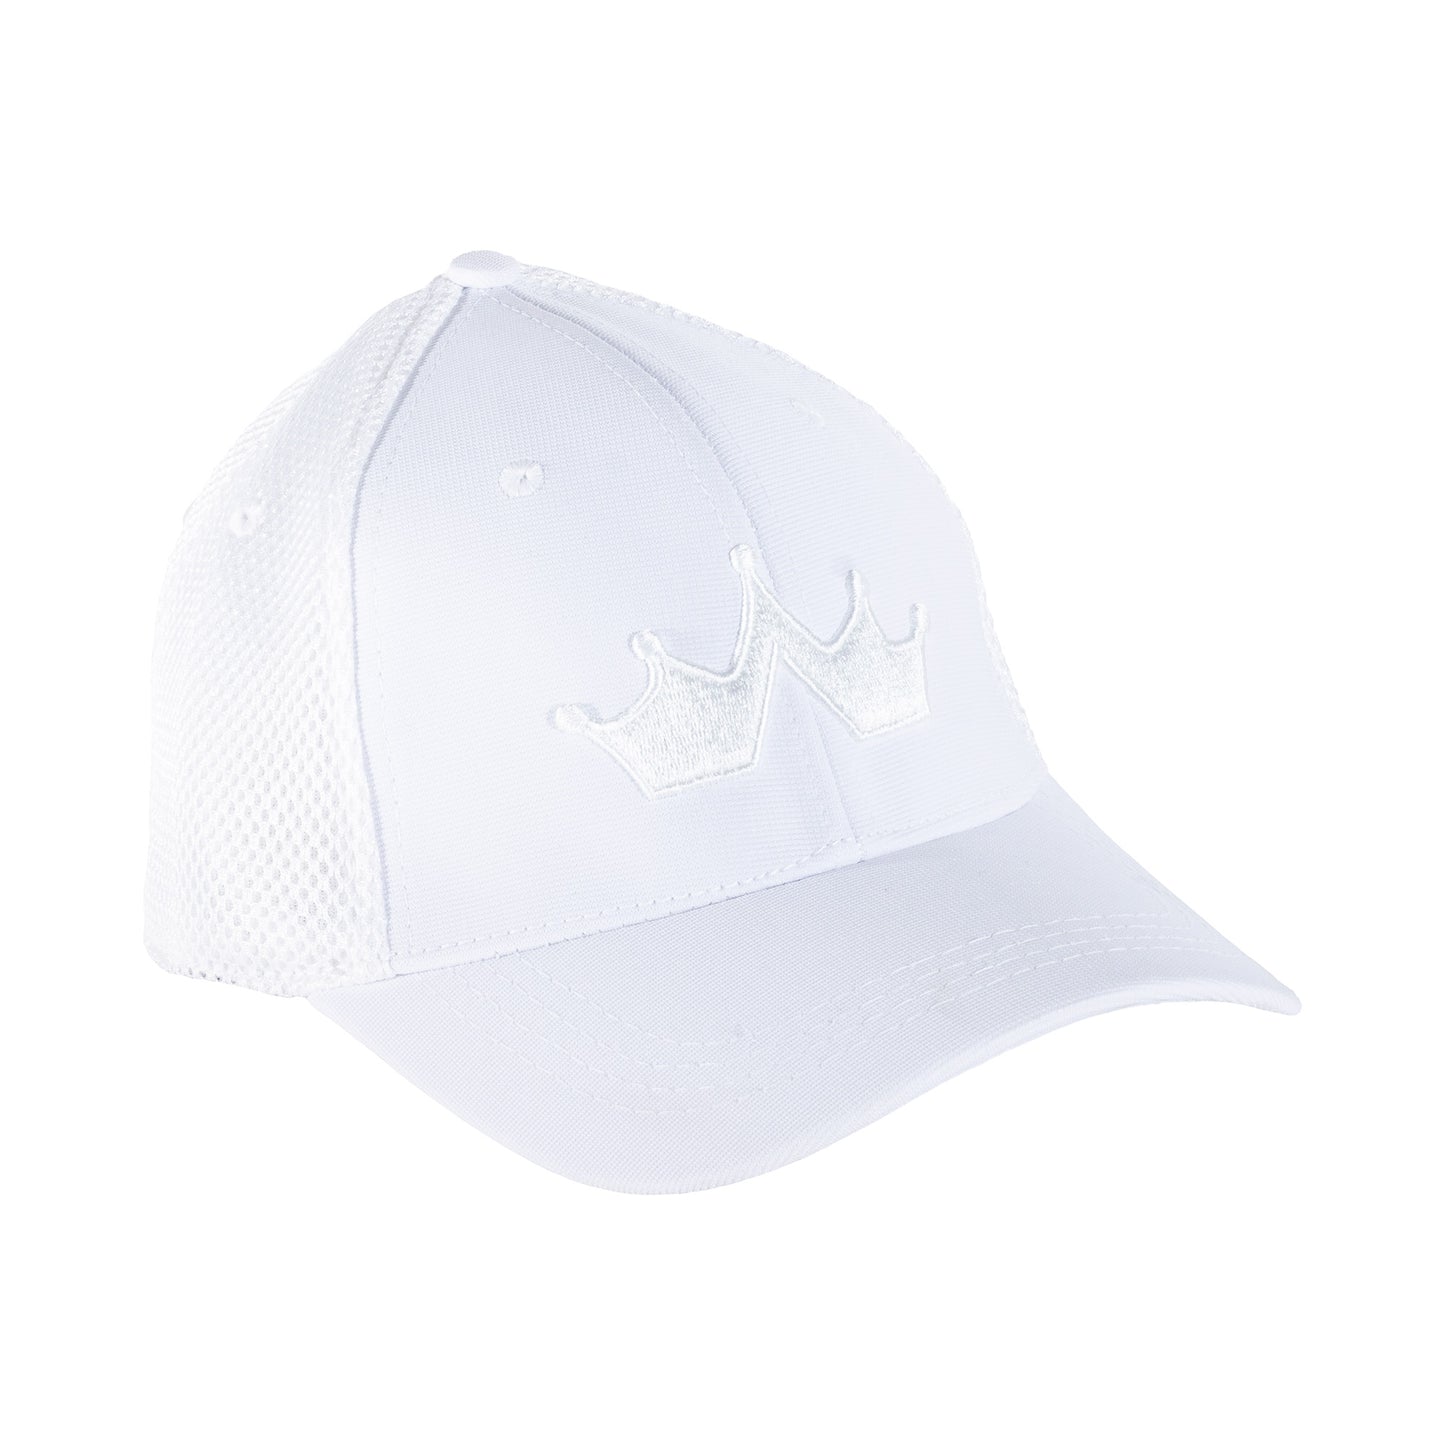 GR0003 White cap